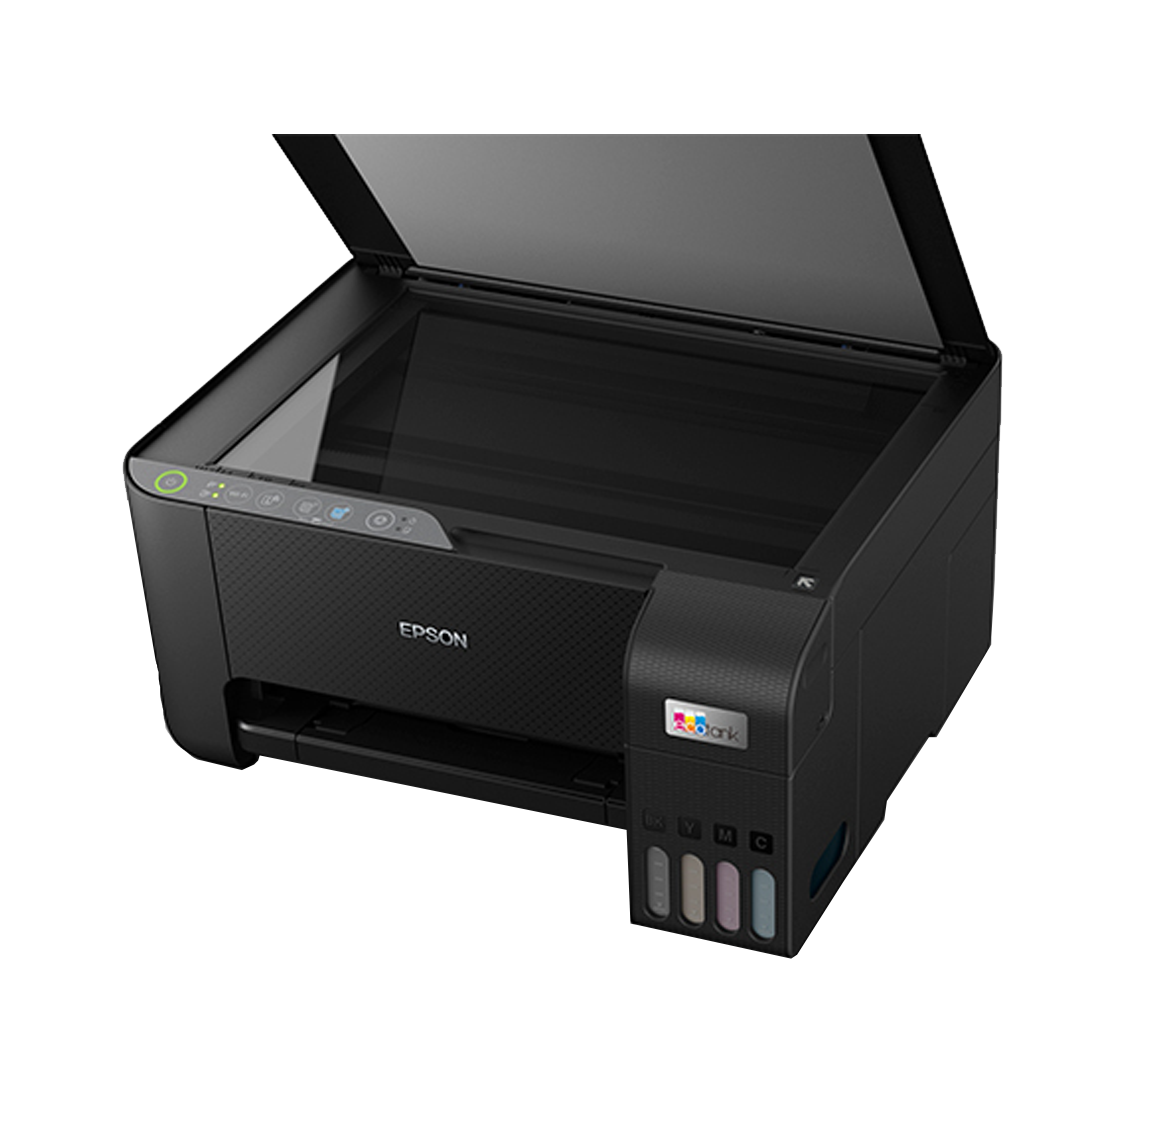 Modelos de impresoras disponibles